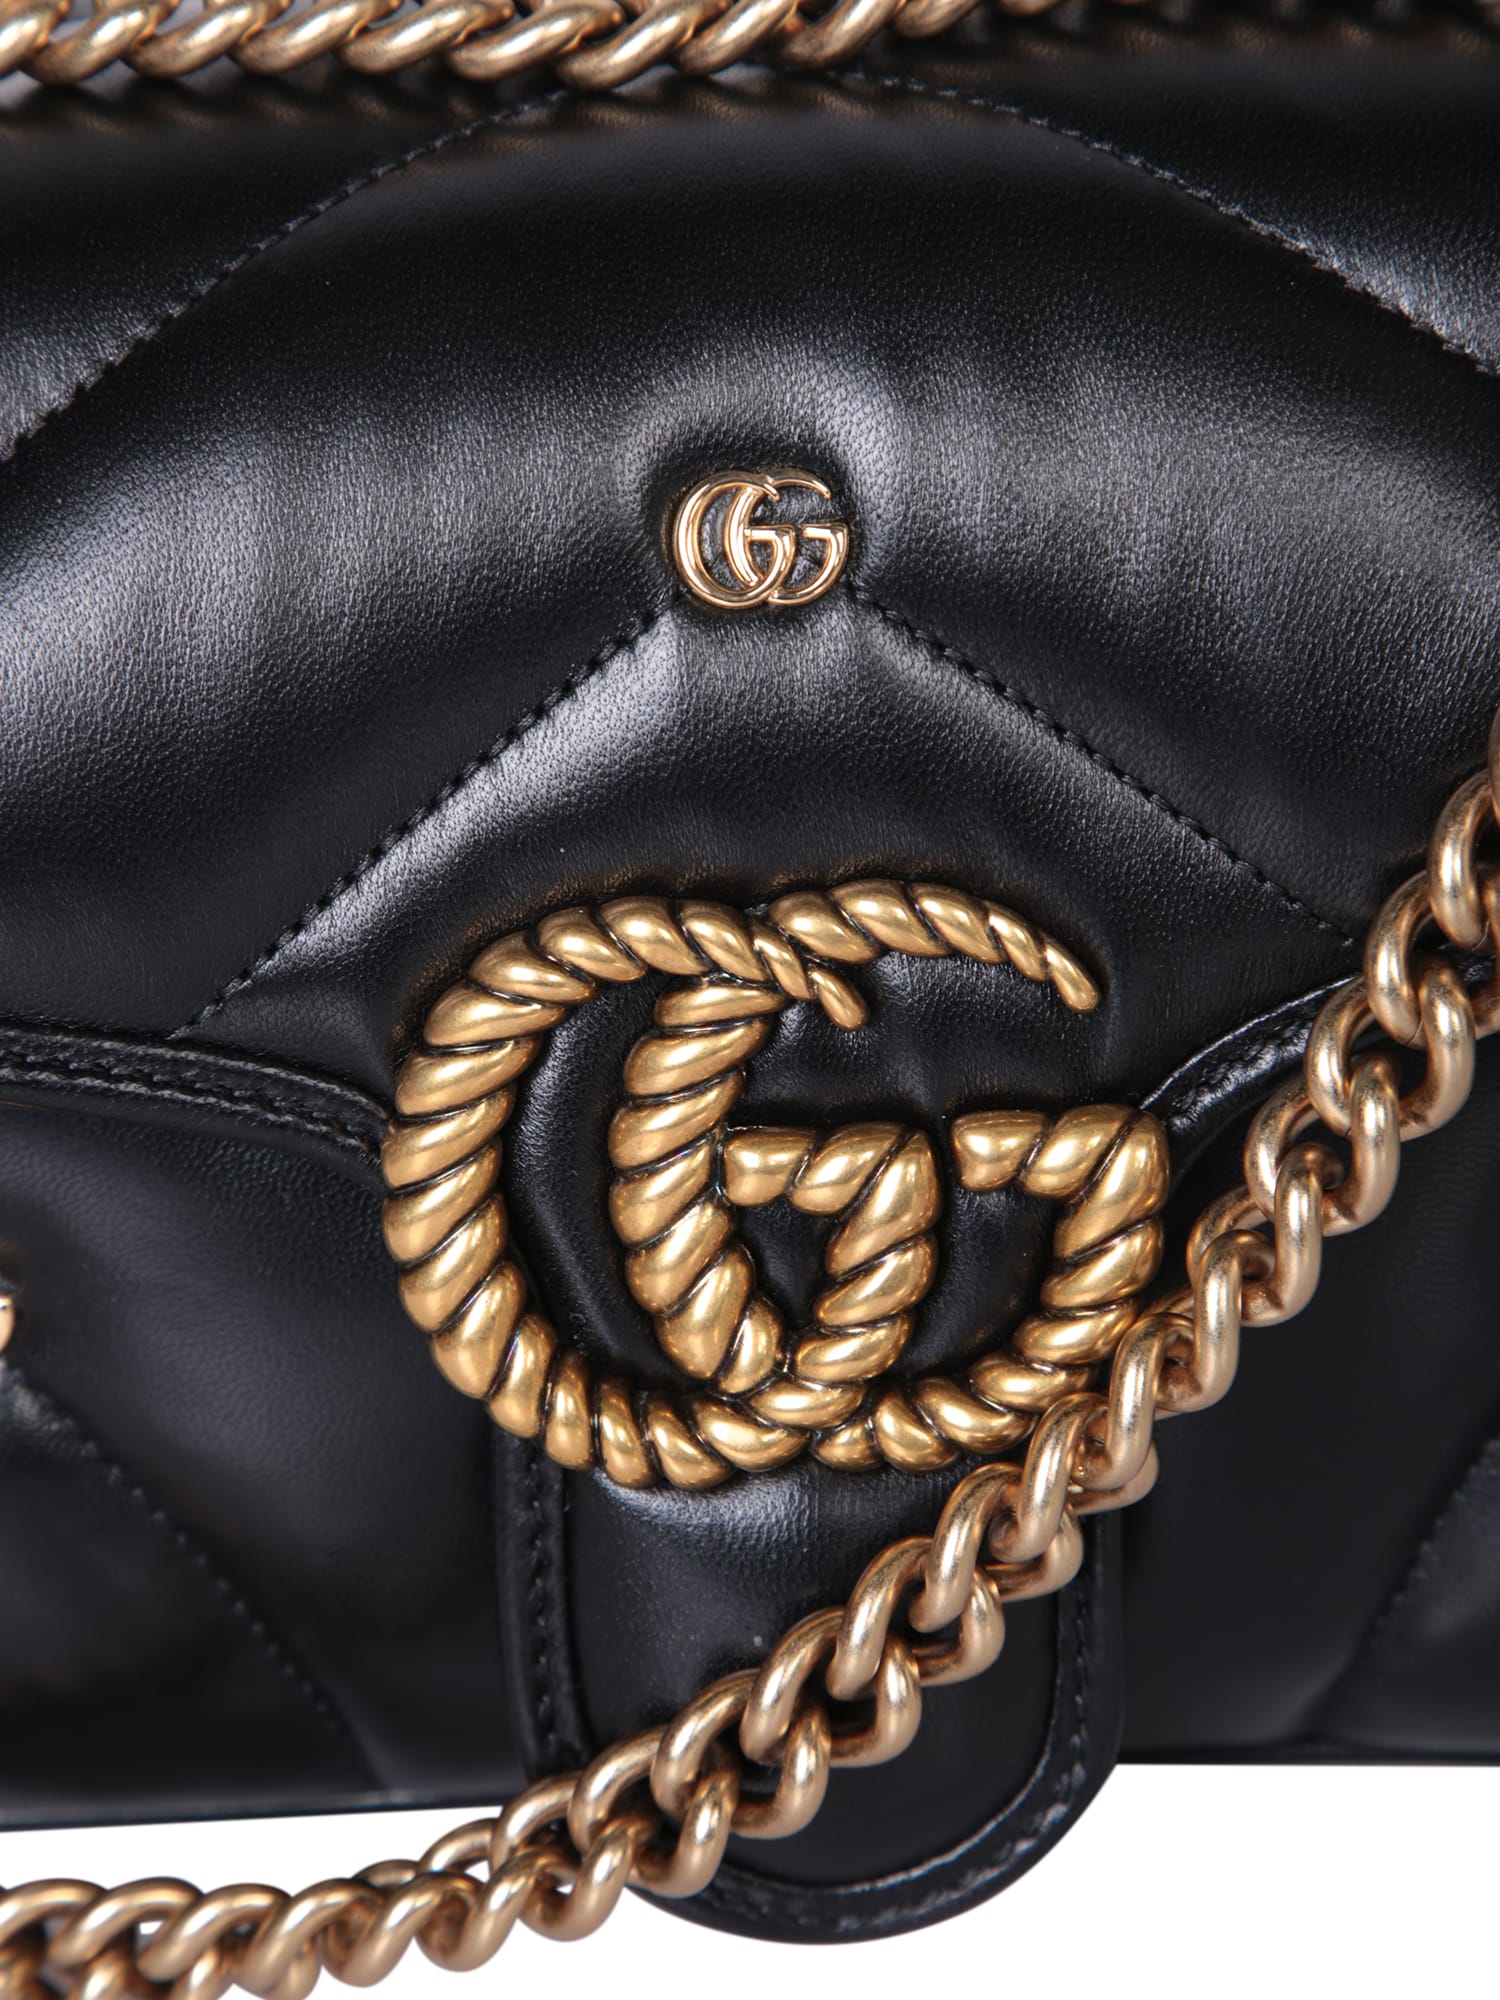 Shop Gucci Marmont S Studs Black Bag